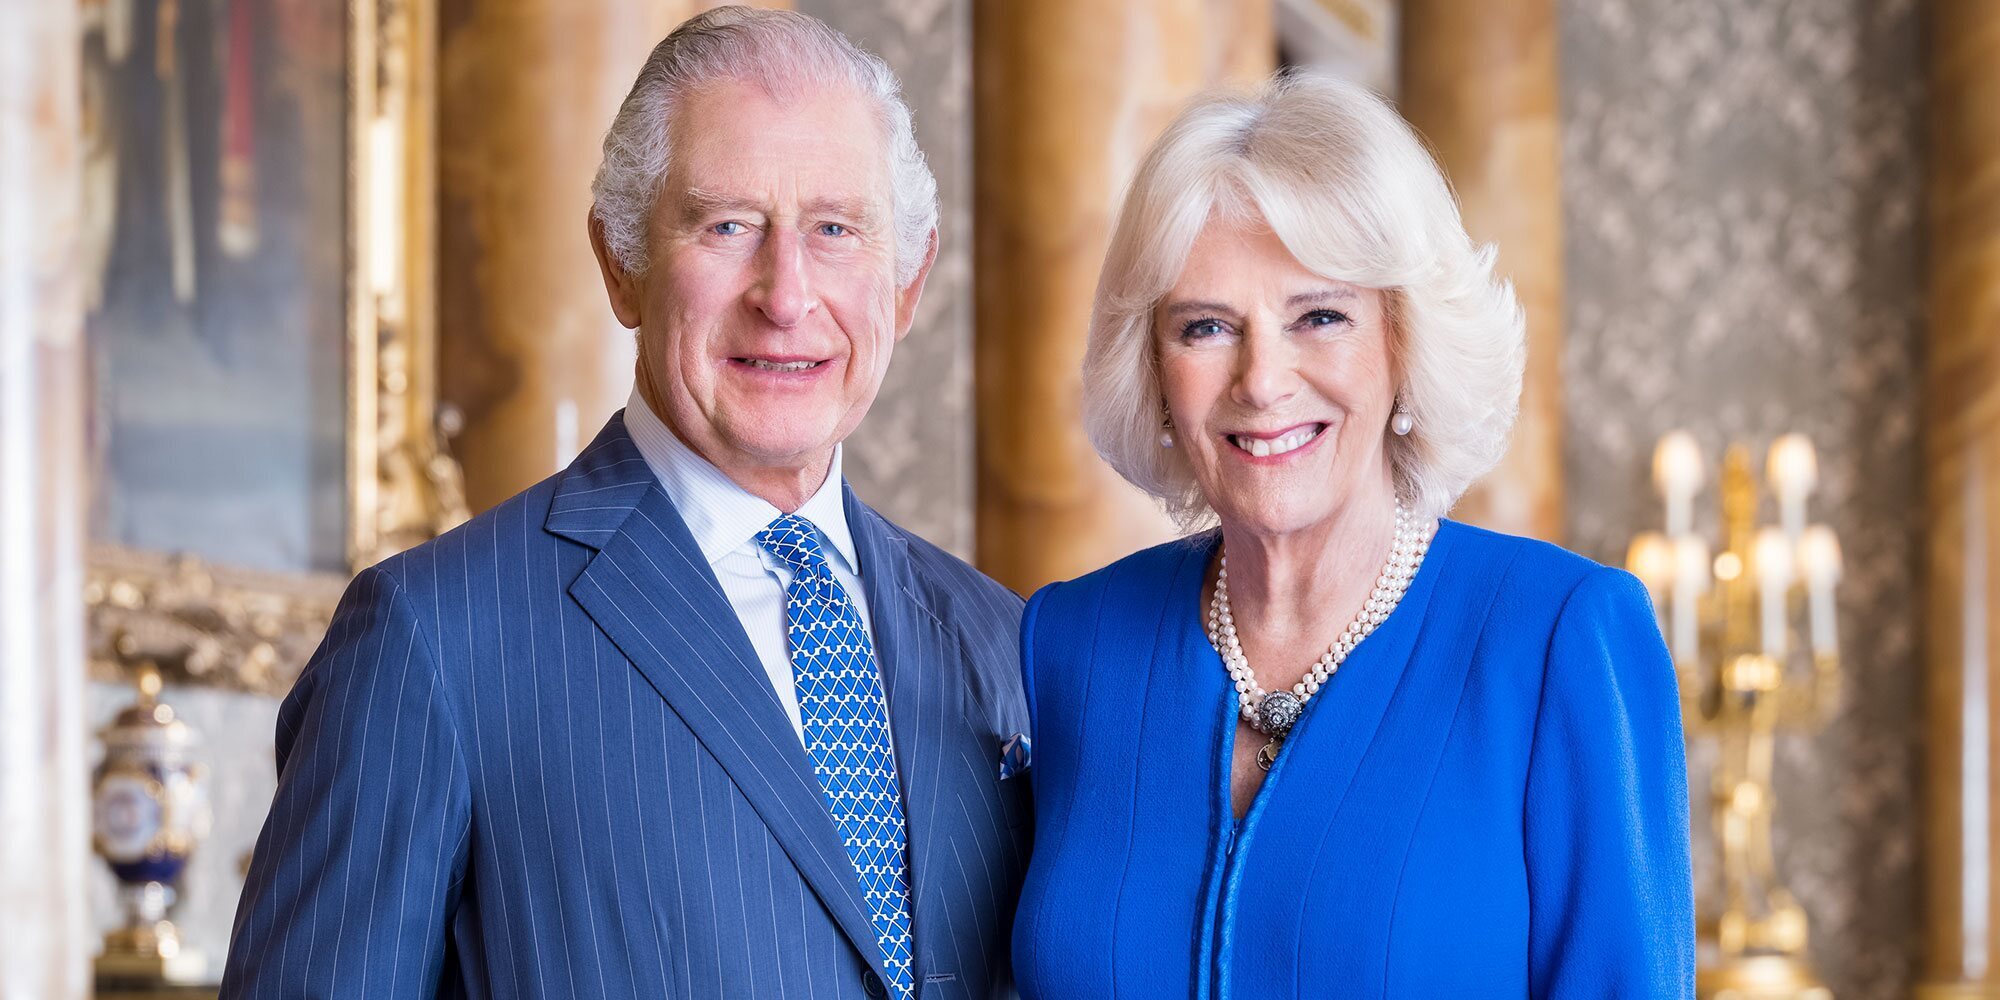 Foto oficial de Carlos y Camilla, la identidad de los pajes, la invitación a la coronación y el adiós a la 'Reina Consorte'